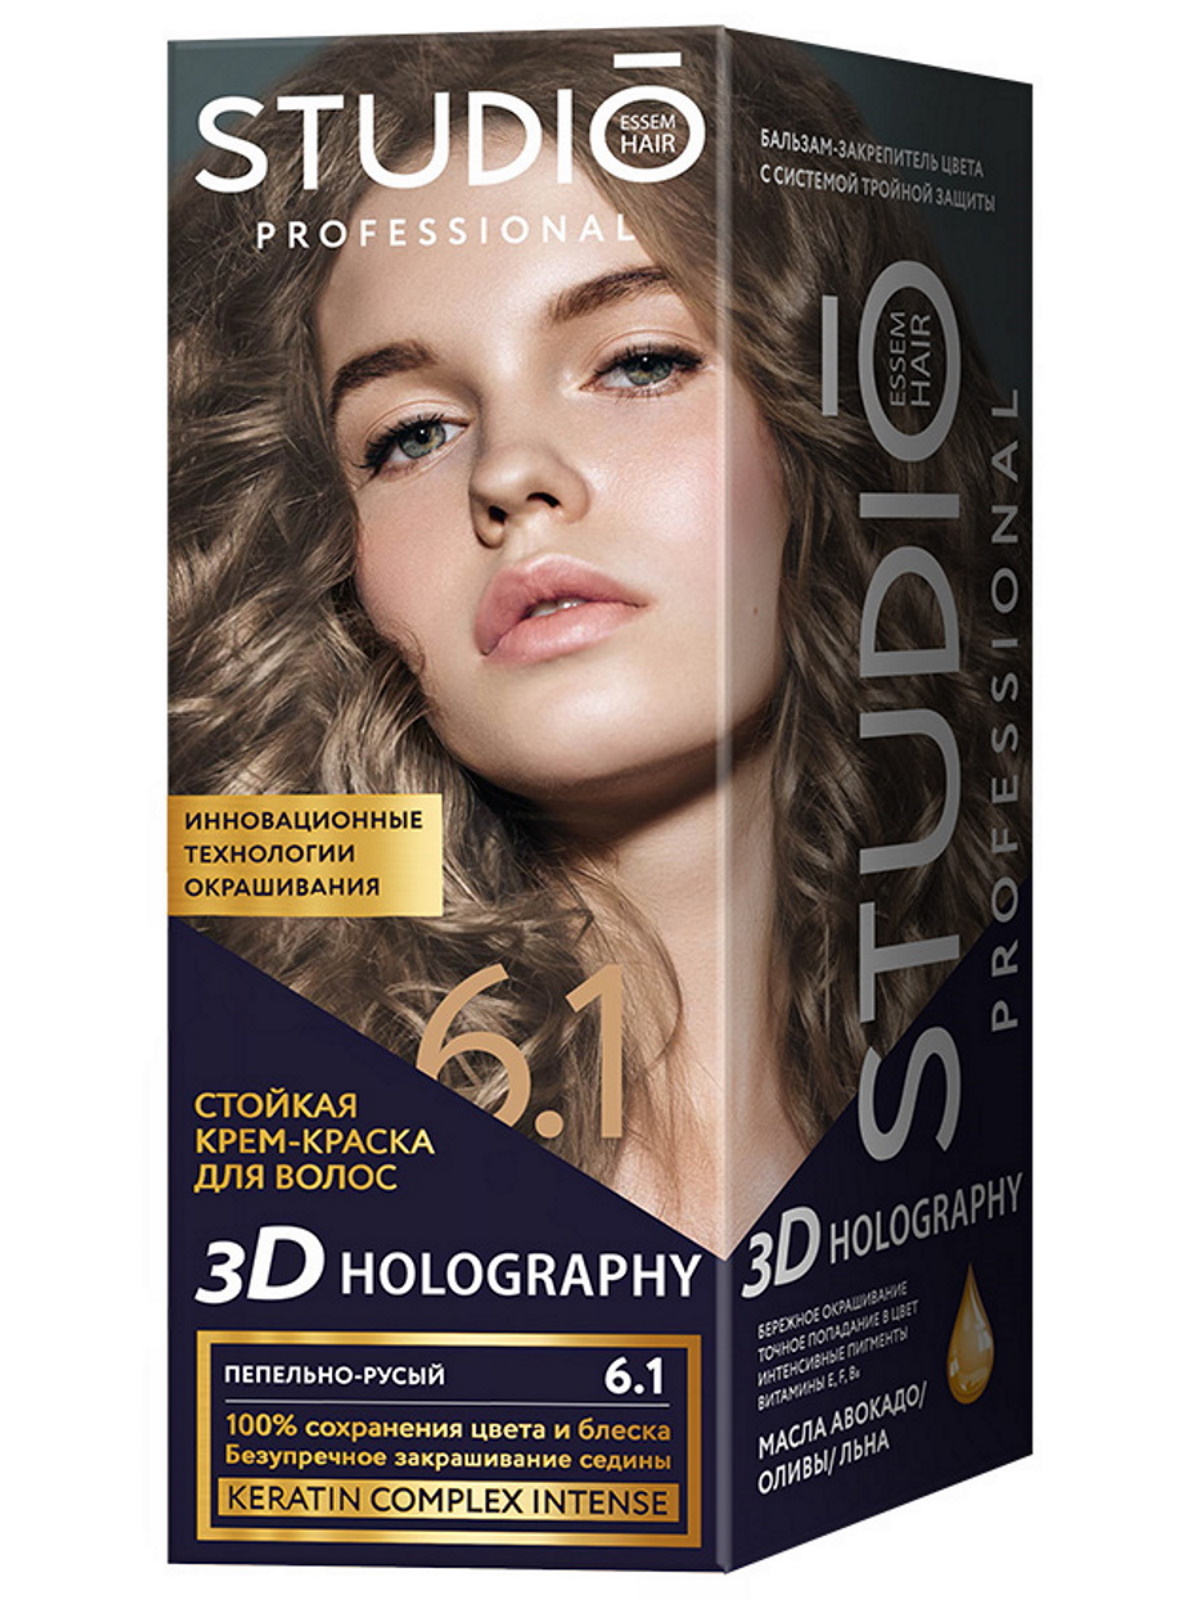 Комплект 3D HOLOGRAPHY STUDIO PROFESSIONAL 6.1 пепельно-русый 2*50+15 мл комплект 3d holography studio professional 7 35 ярко рыжий 2 50 15 мл